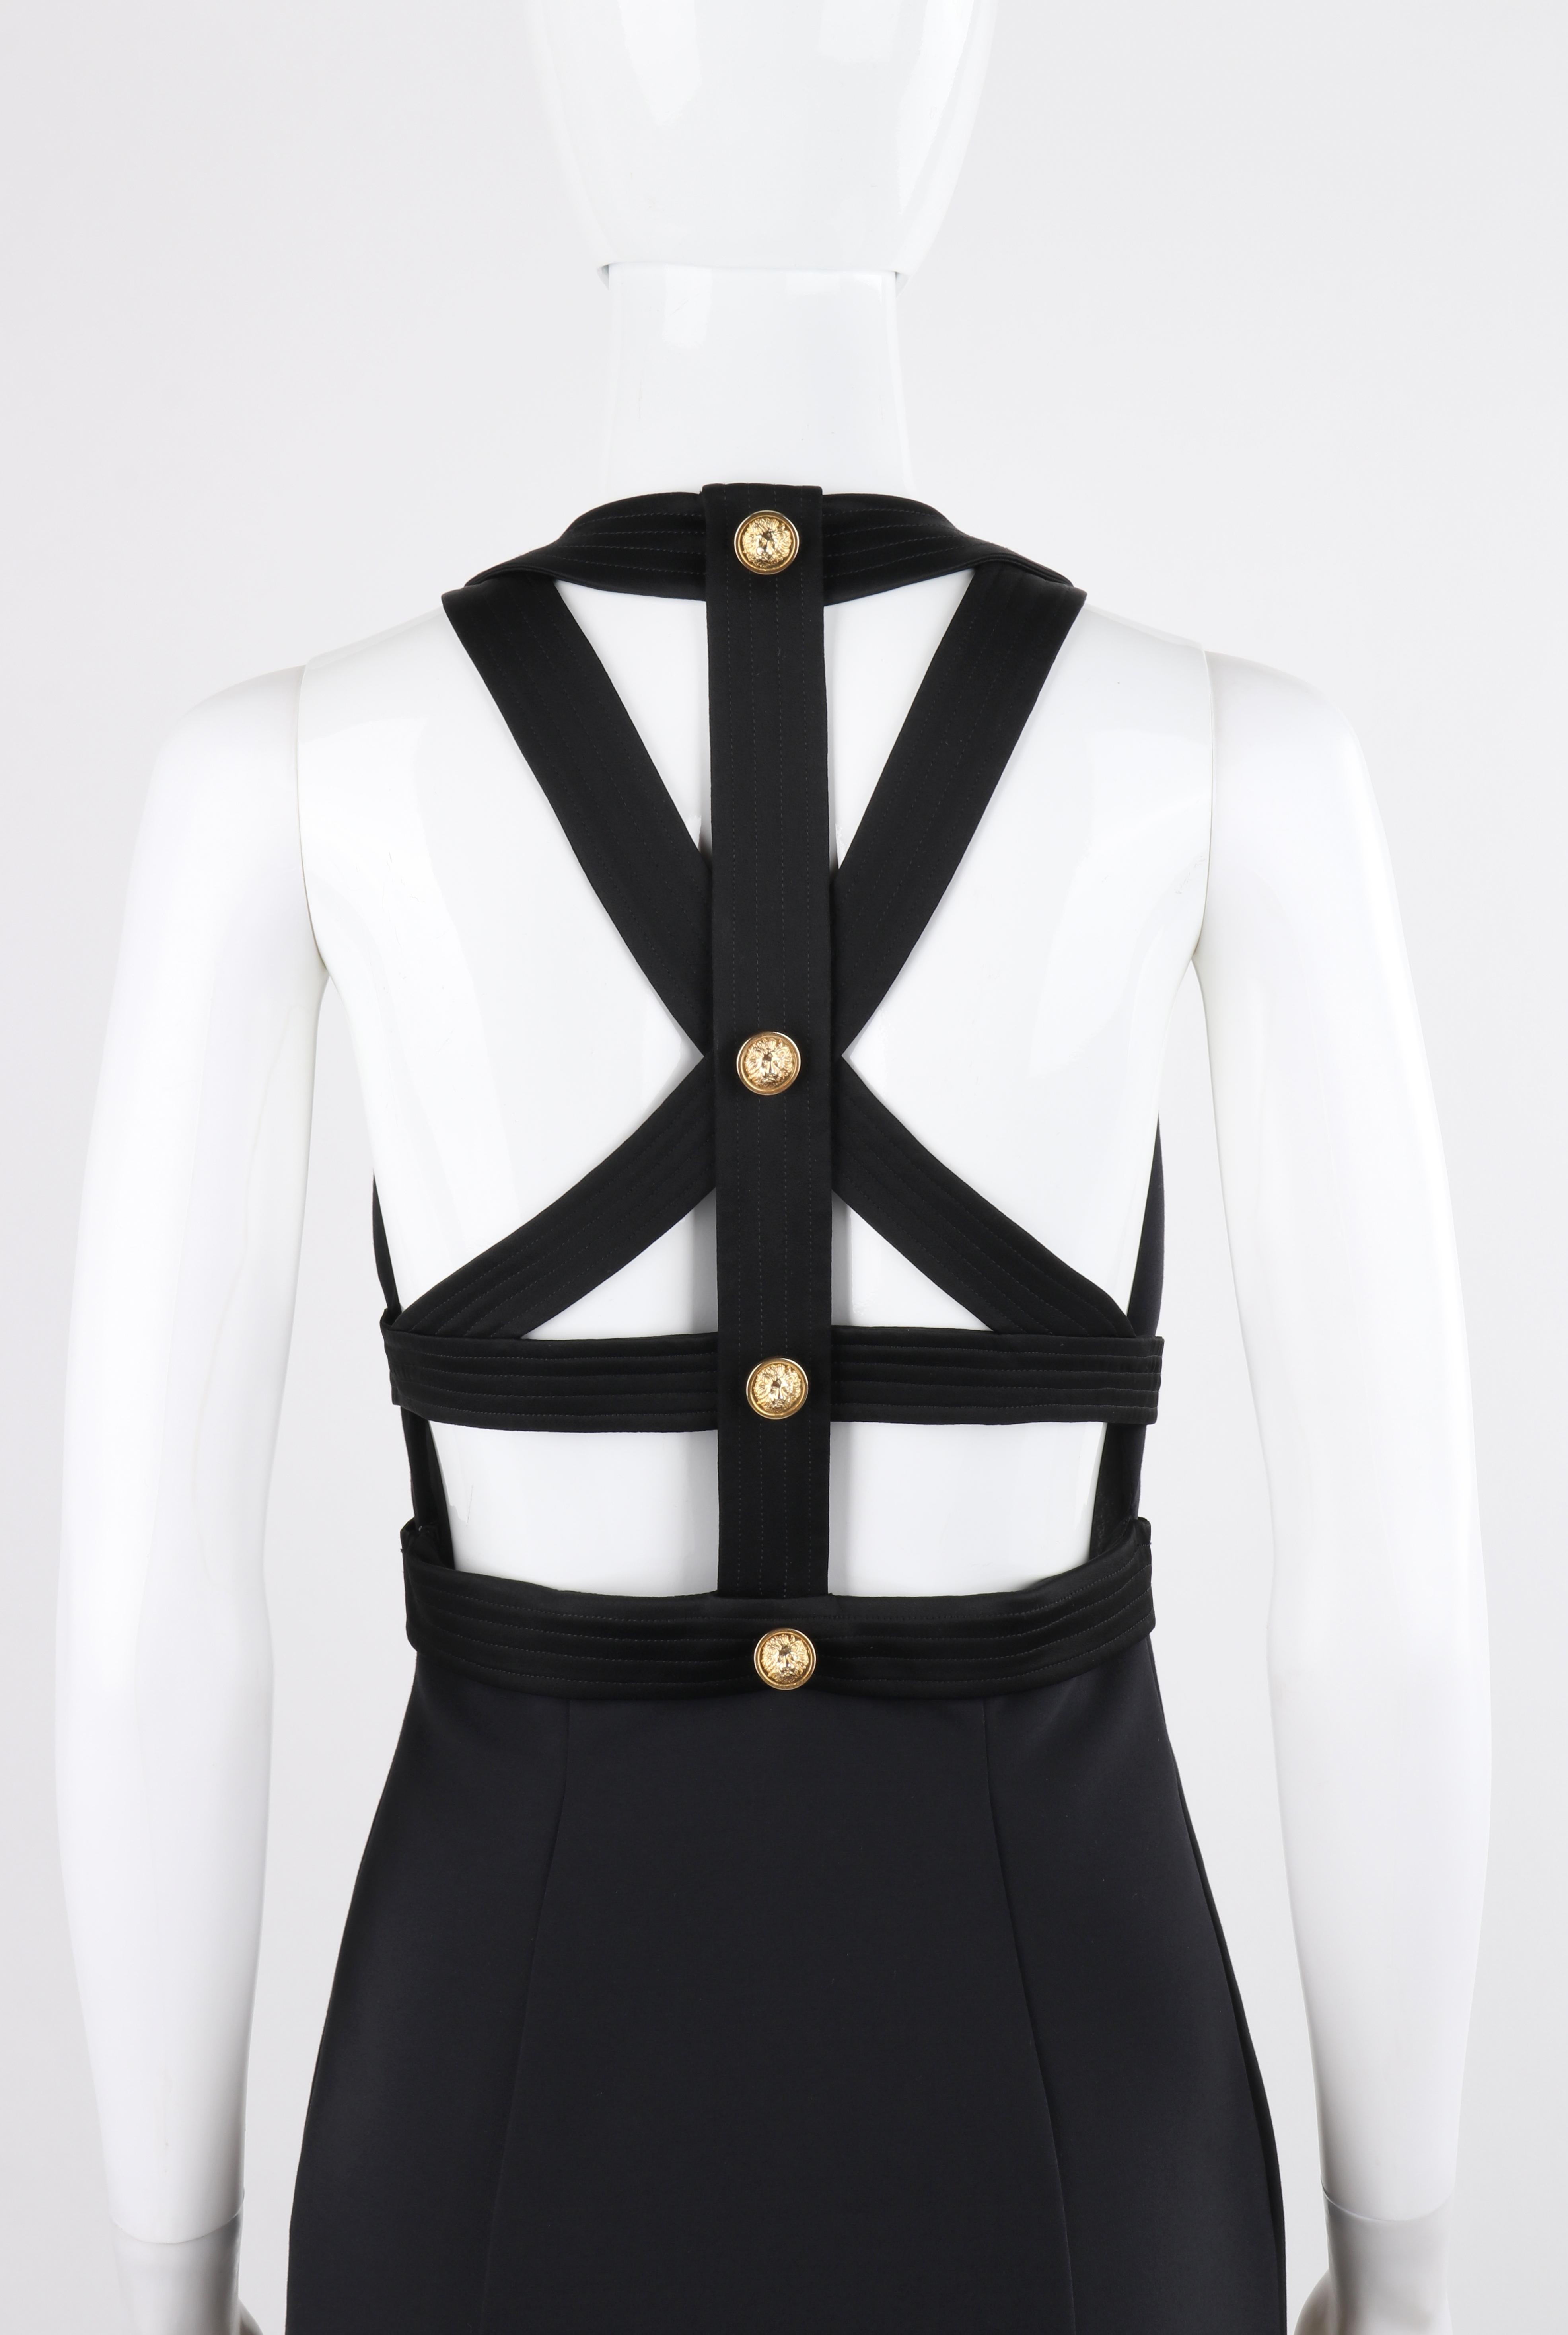 Women's or Men's VERSACE S/S 2015 Black Bondage Gold Lion Button Overall Princess Line Dress  For Sale